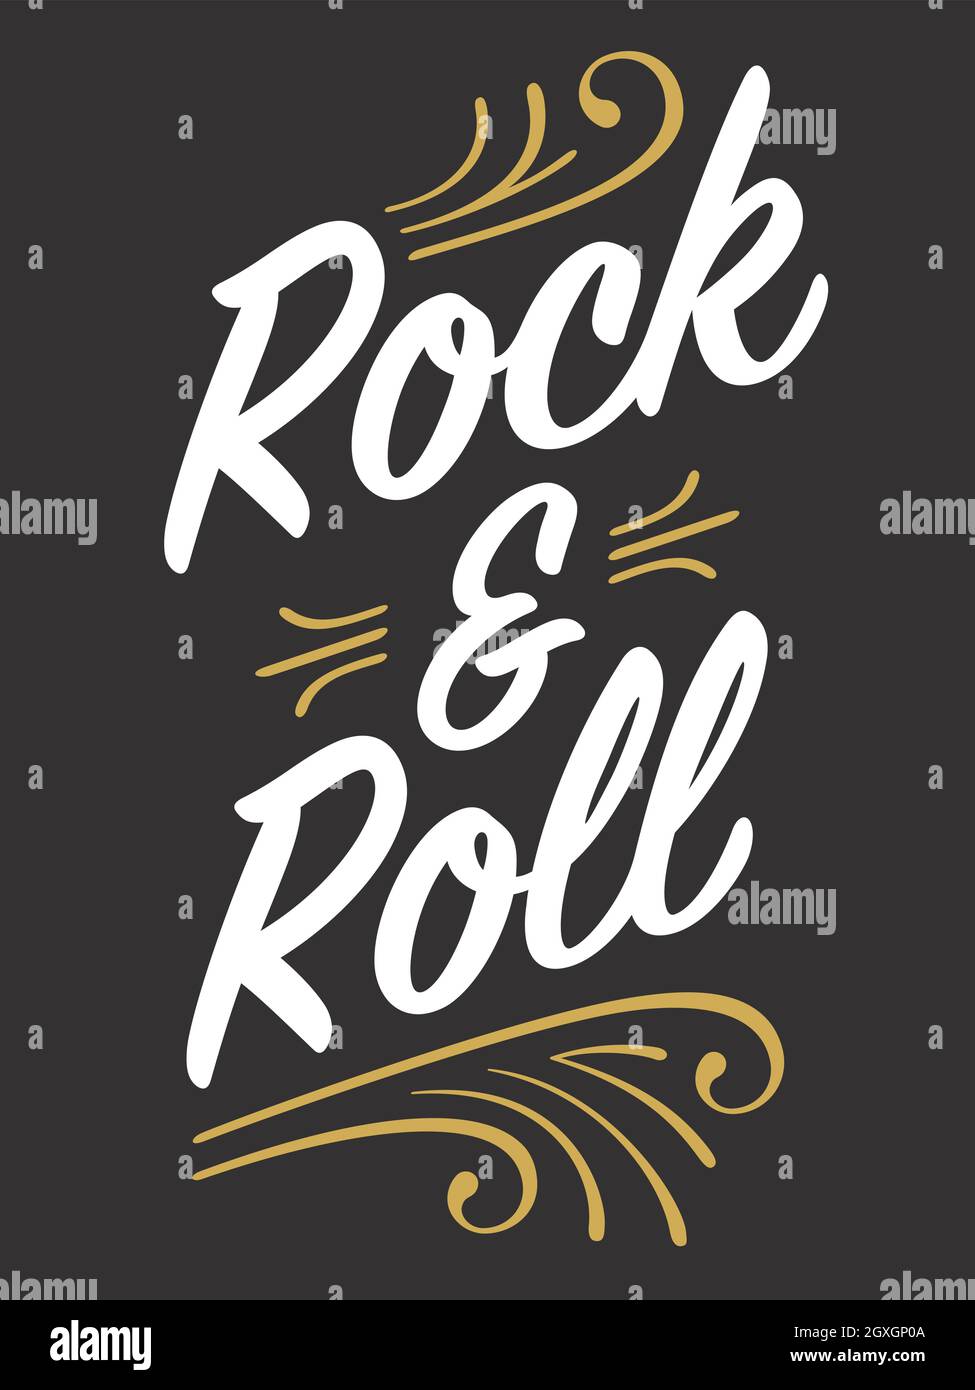 Headbanger Rock Roll Logo Sign Stock Vector (Royalty Free) 1675979959